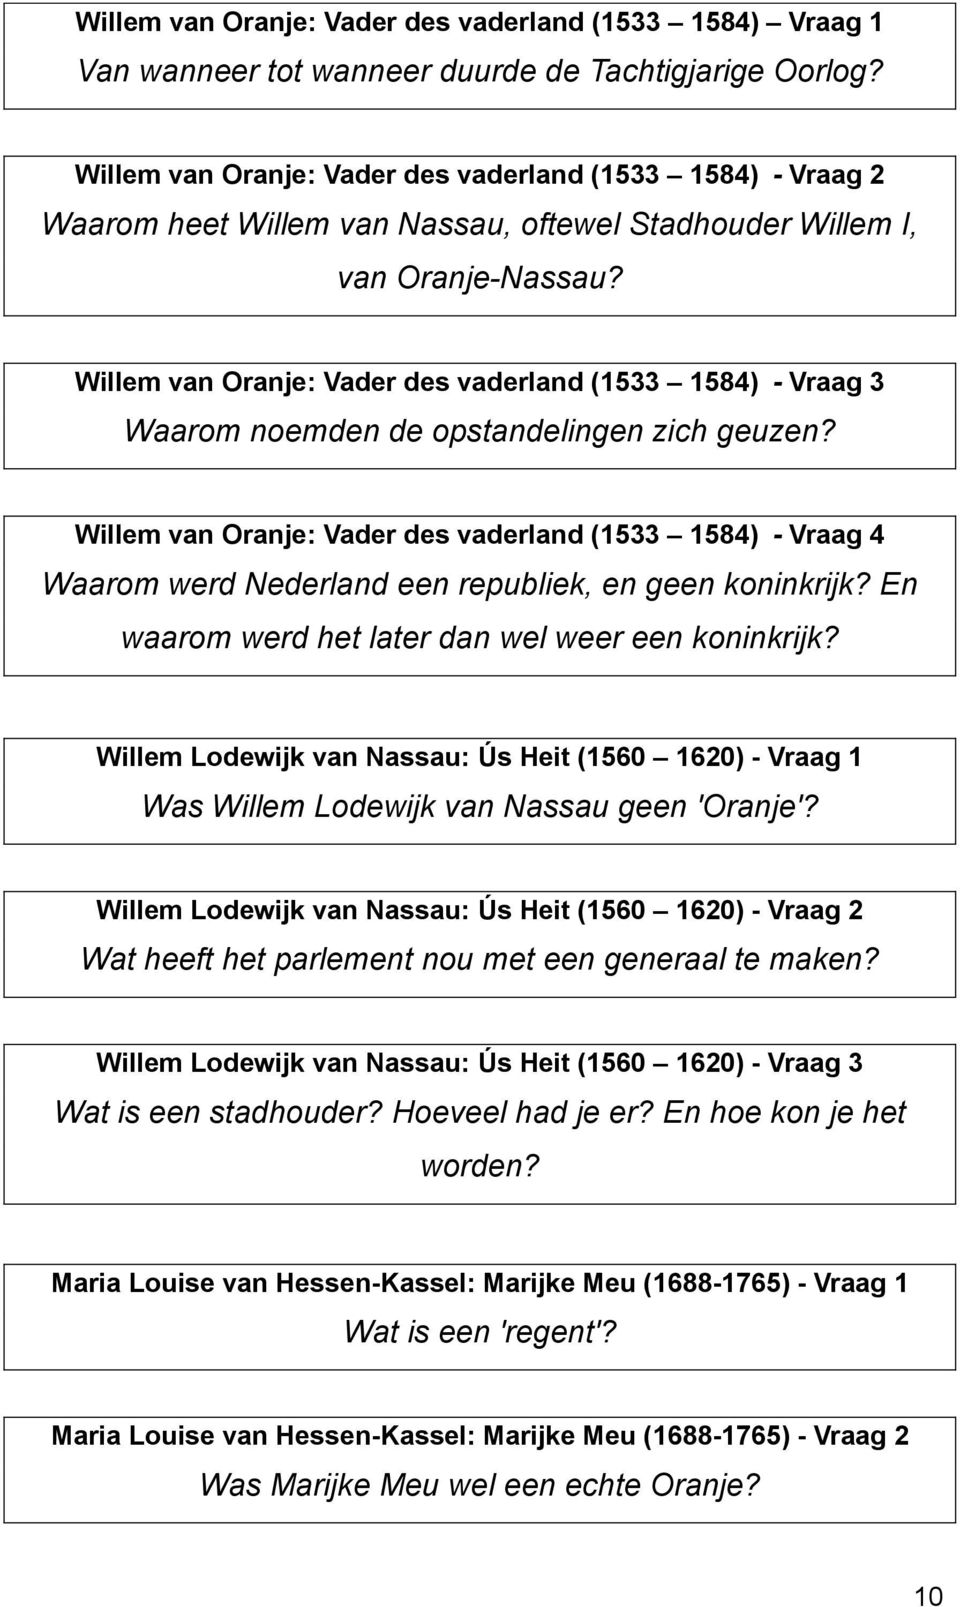 Willem van Oranje: Vader des vaderland (1533 1584) - Vraag 3 Waarom noemden de opstandelingen zich geuzen?